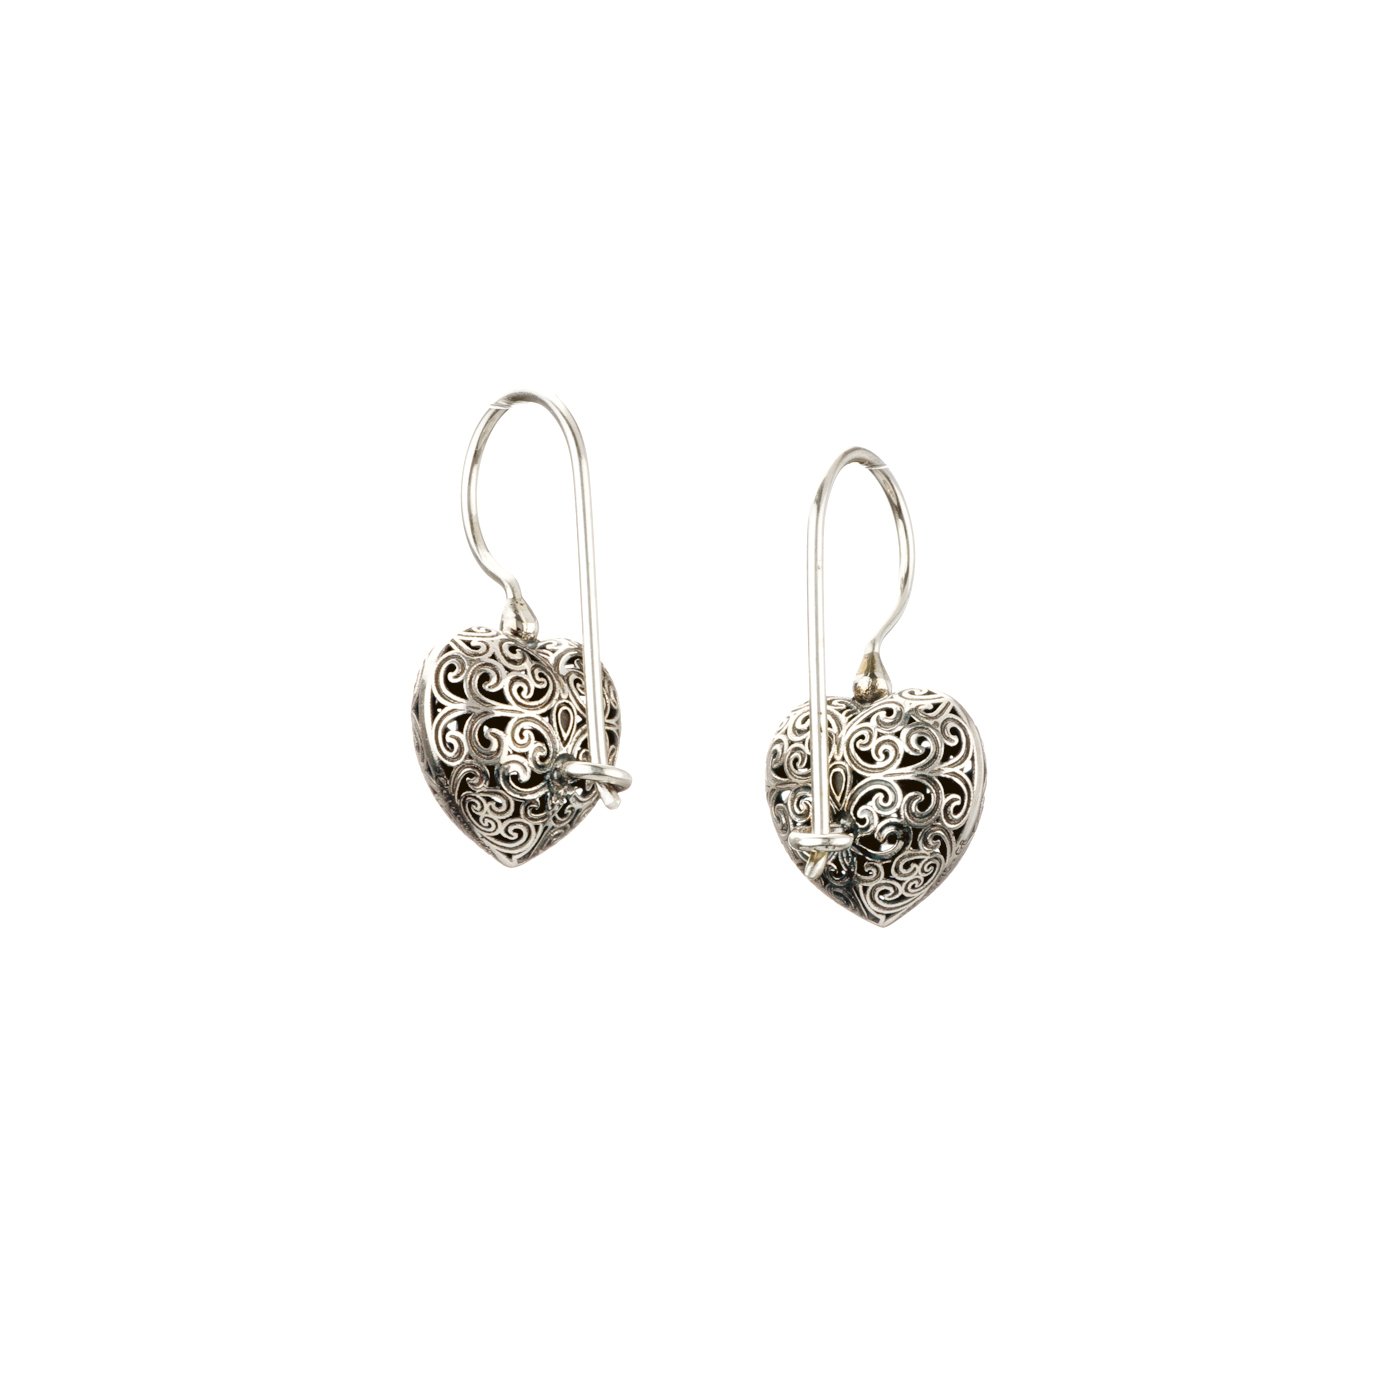 Kallisto Heart Earrings in oxidized Silver 925